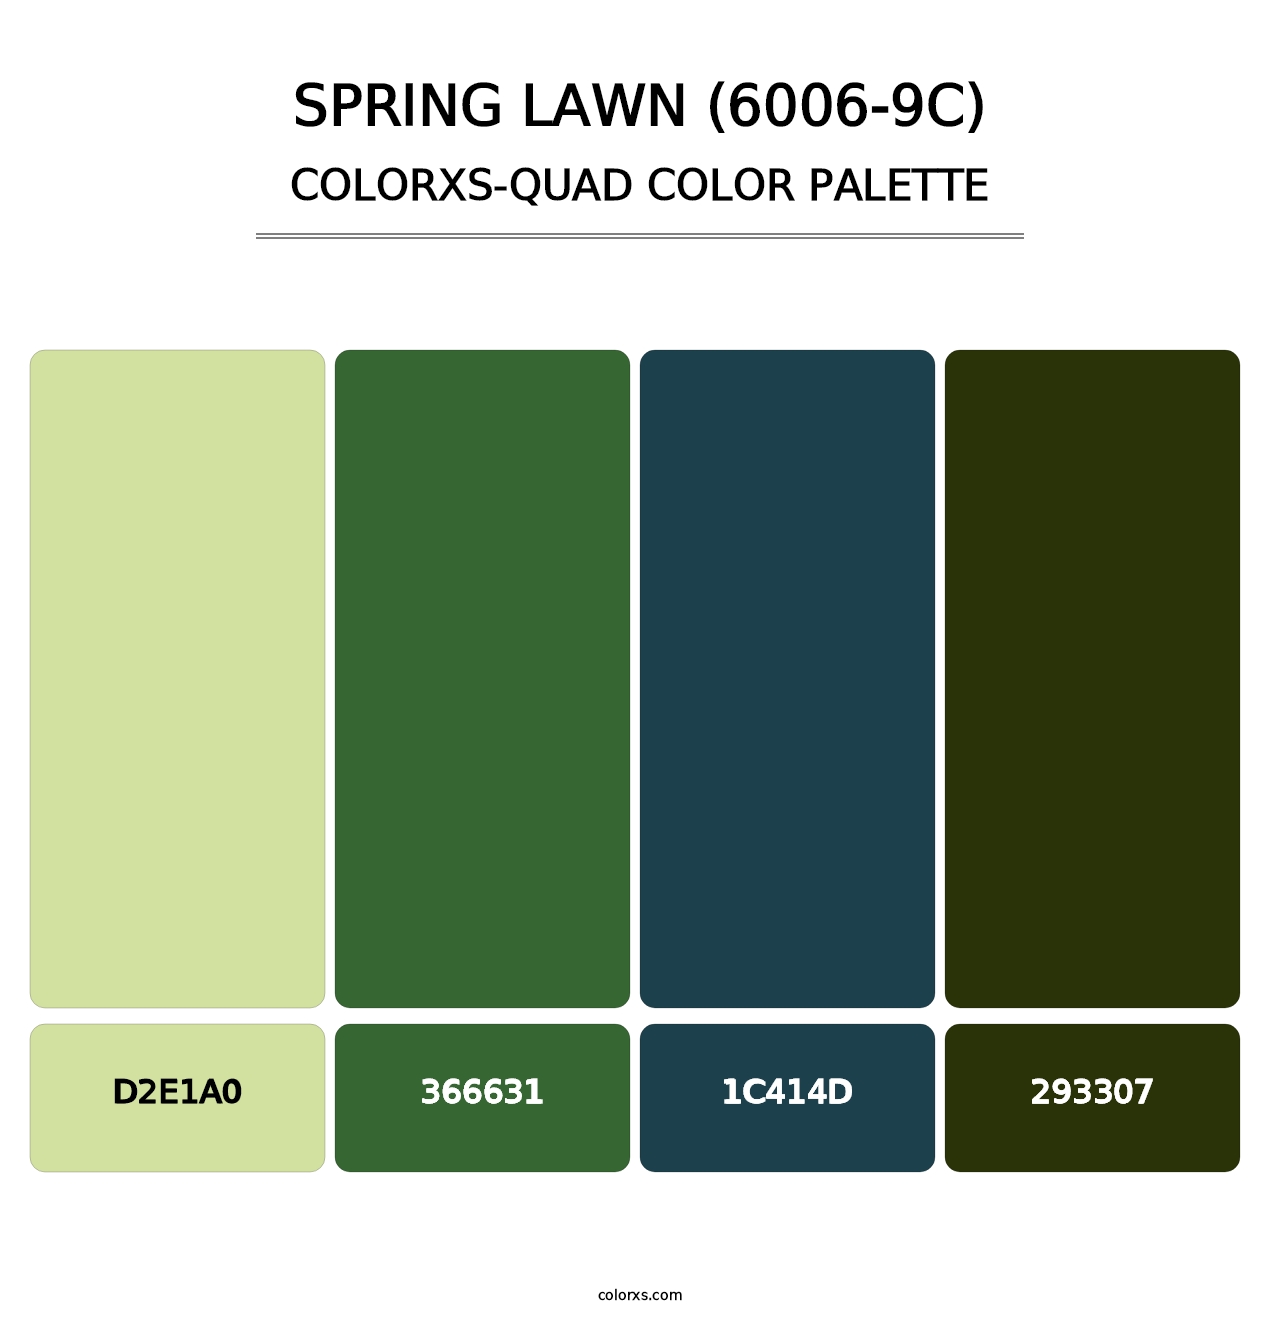 Spring Lawn (6006-9C) - Colorxs Quad Palette